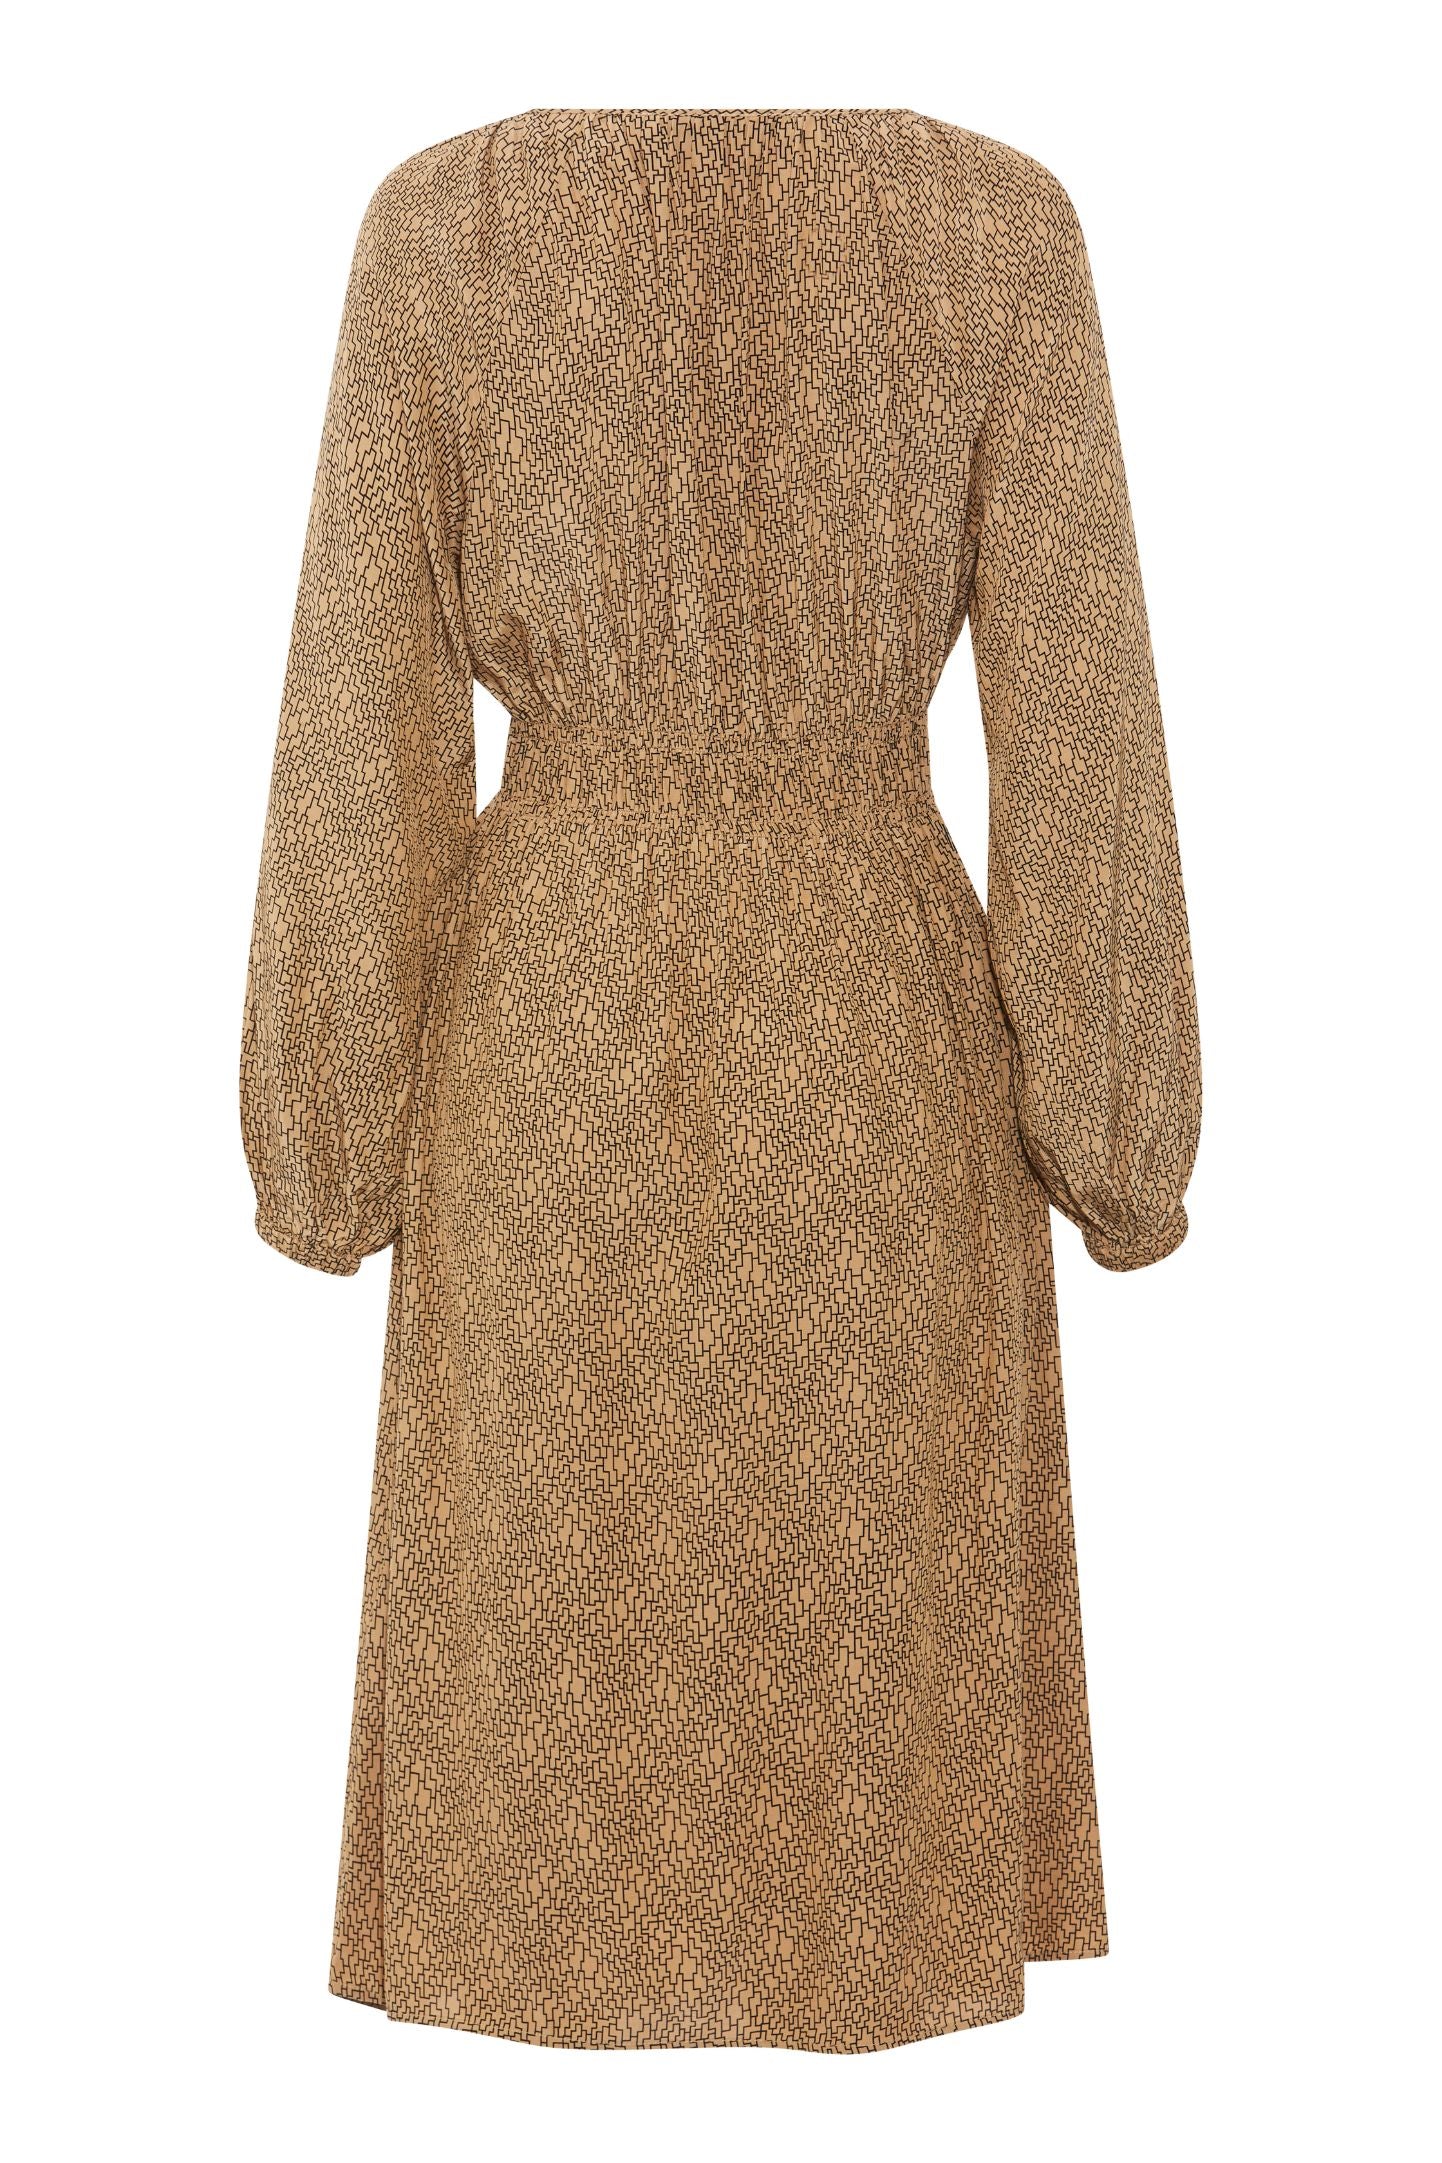 Advania Dress | Antique Bronze